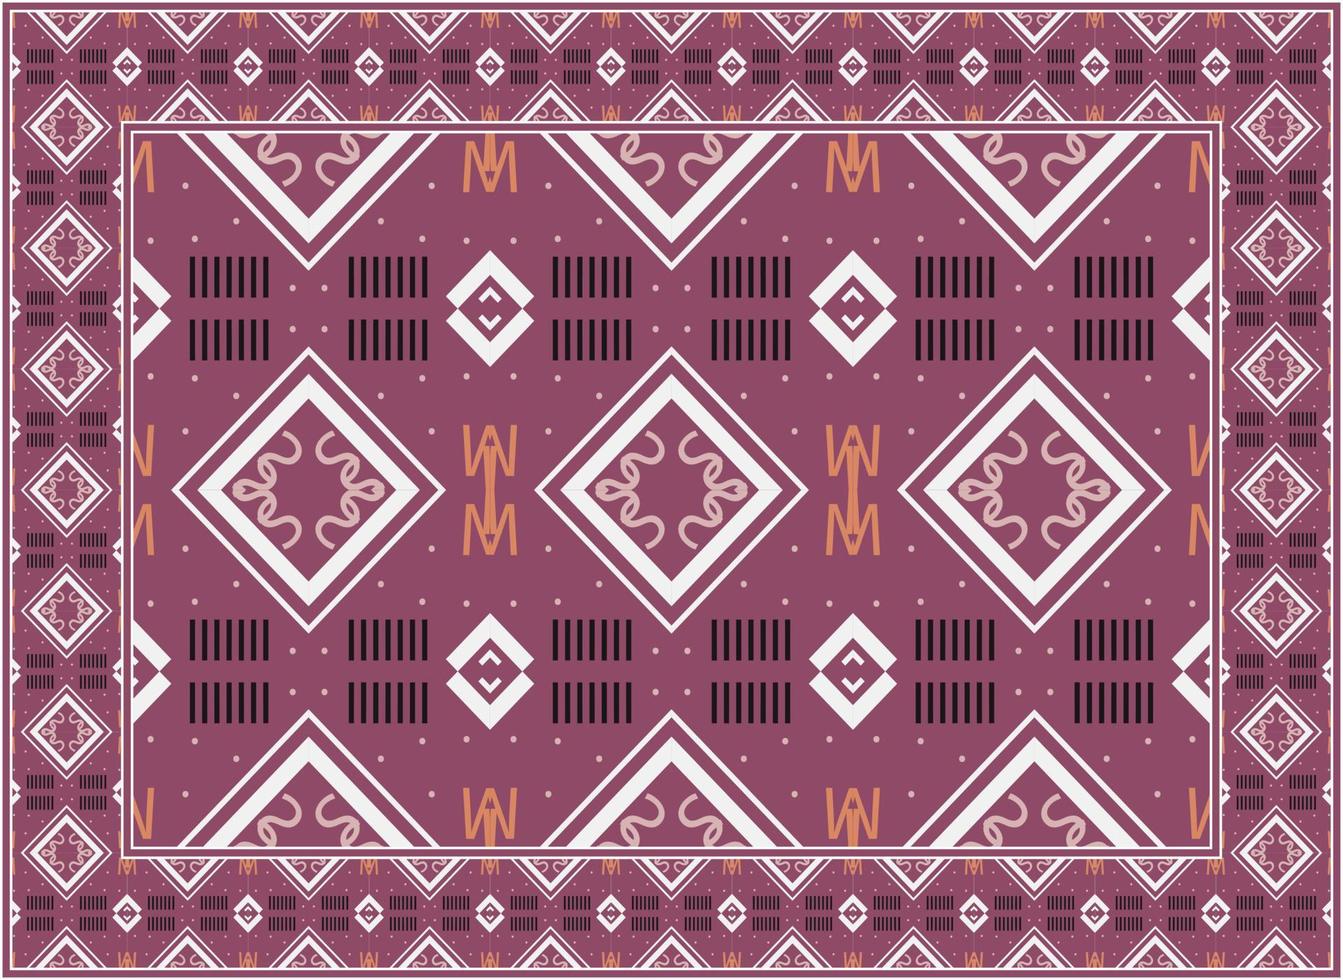 modern Perzisch tapijt textuur, Afrikaanse etnisch naadloos patroon modern Perzisch tapijt, Afrikaanse etnisch aztec stijl ontwerp voor afdrukken kleding stof tapijten, handdoeken, zakdoeken, sjaals tapijt, vector